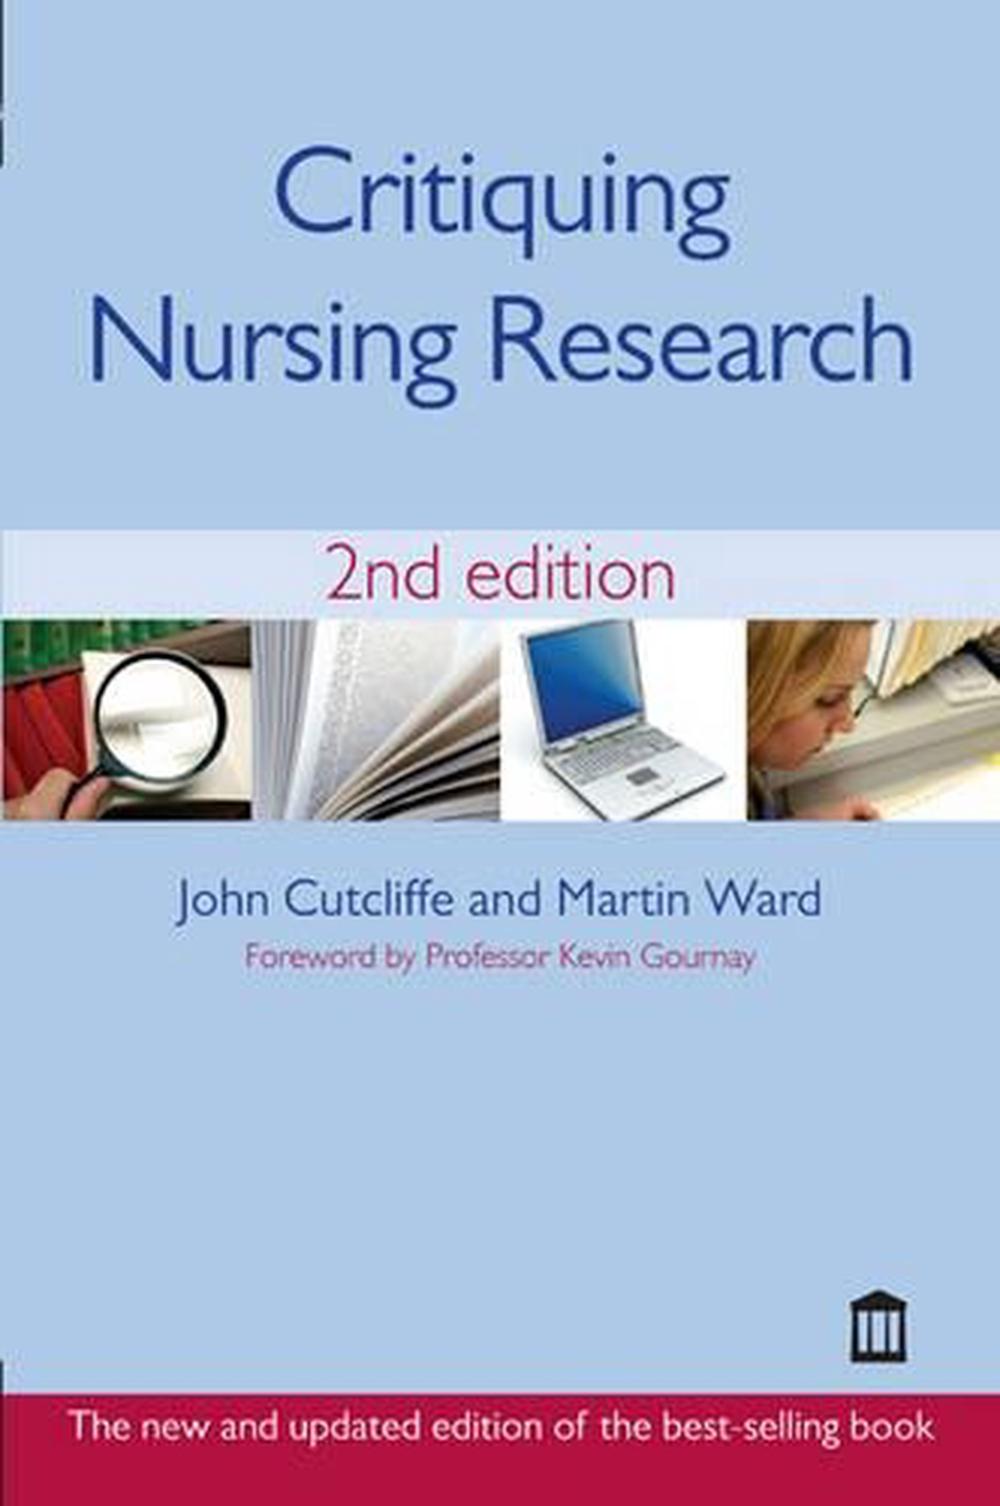 Nurses Roles In Critiquing Studies